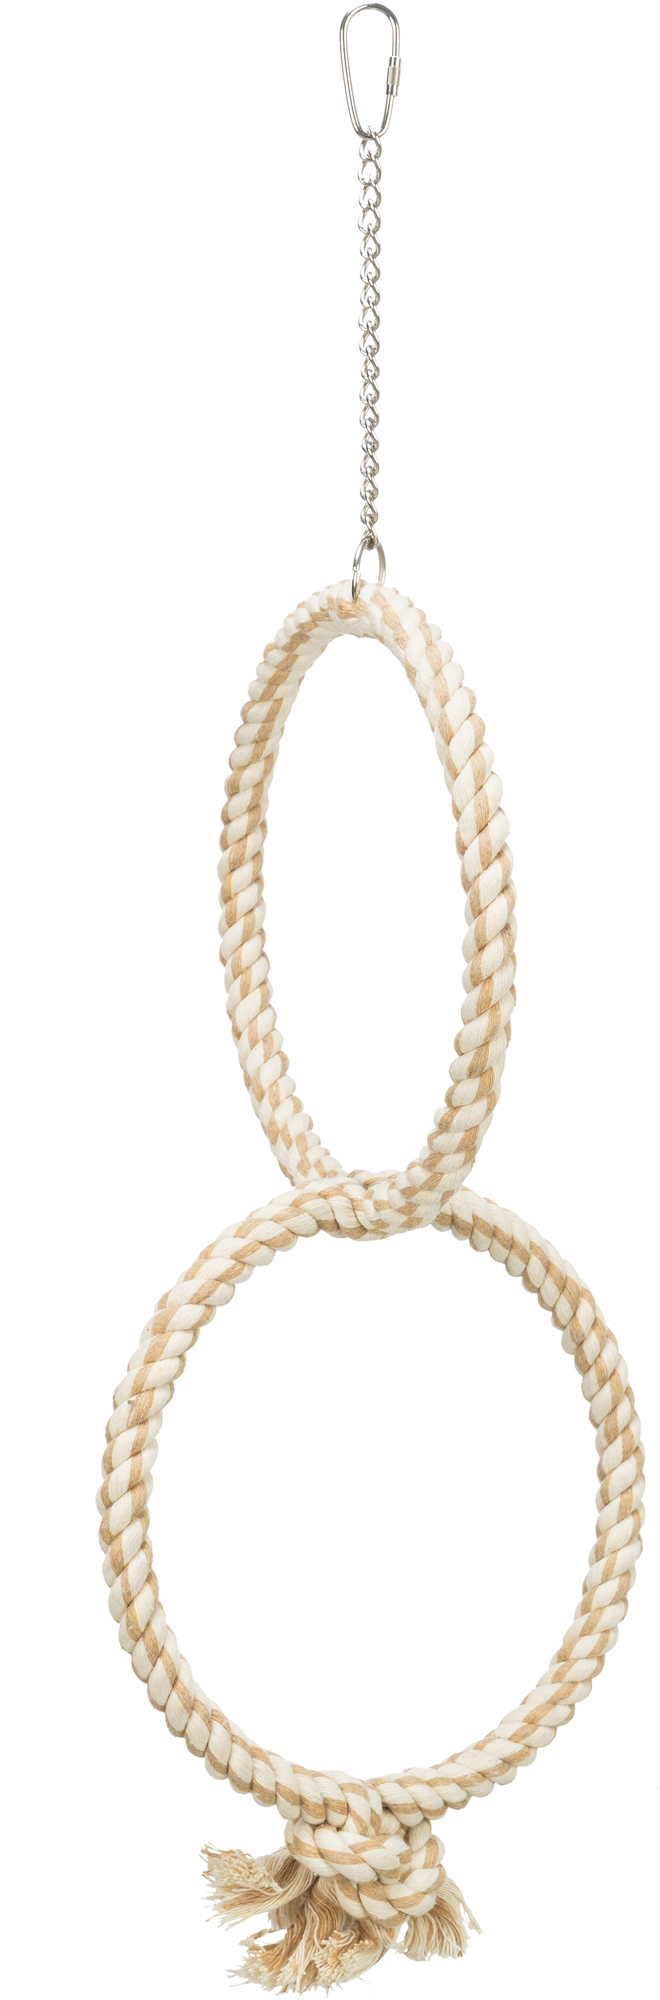 Anel duplo em corda - Ø 16 cm